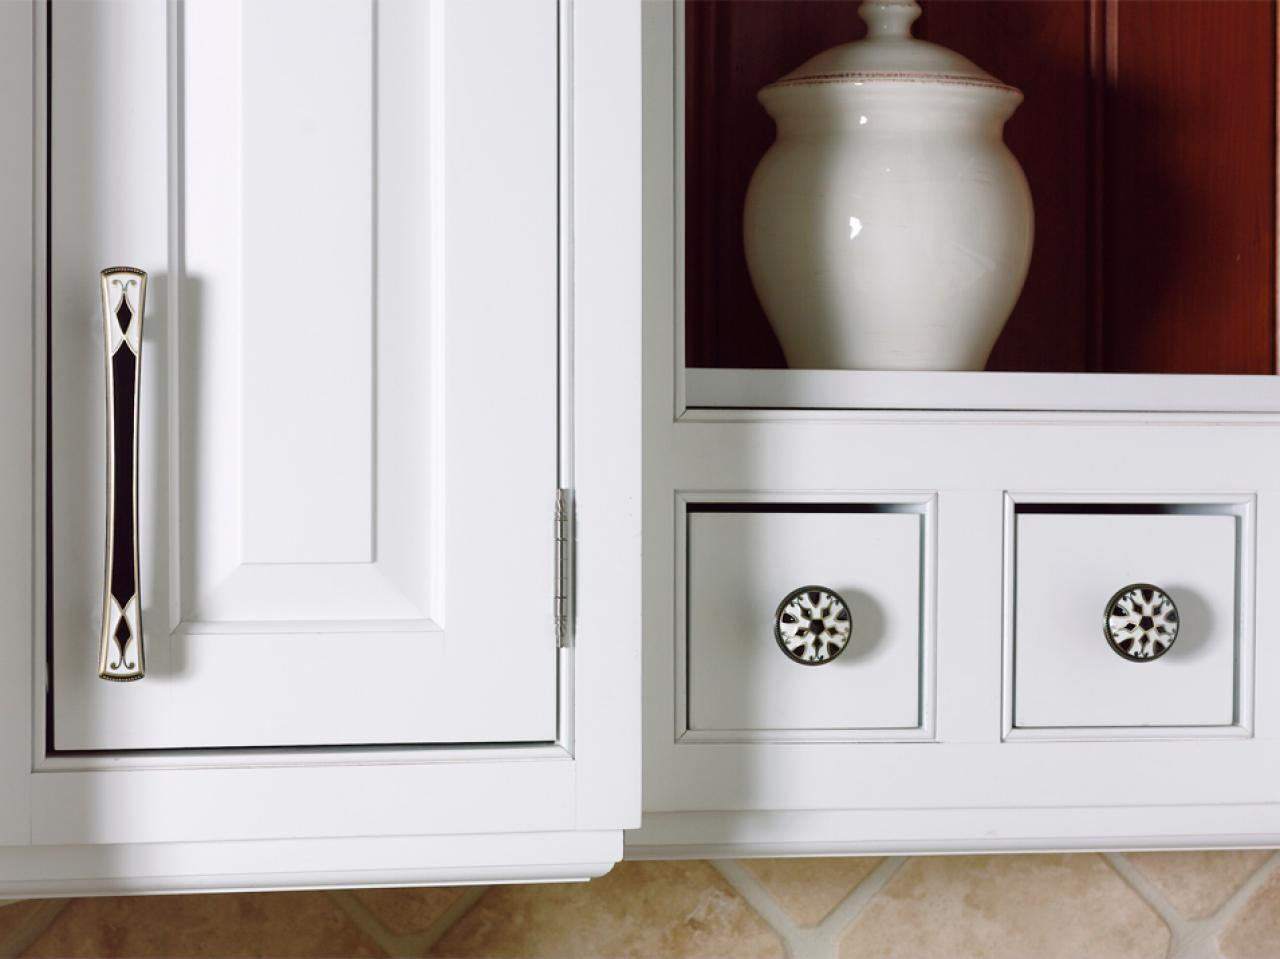 Best ideas about Kitchen Cabinets Handles
. Save or Pin Find Best Kitchen Cabinet Handles Rafael Home Biz Now.